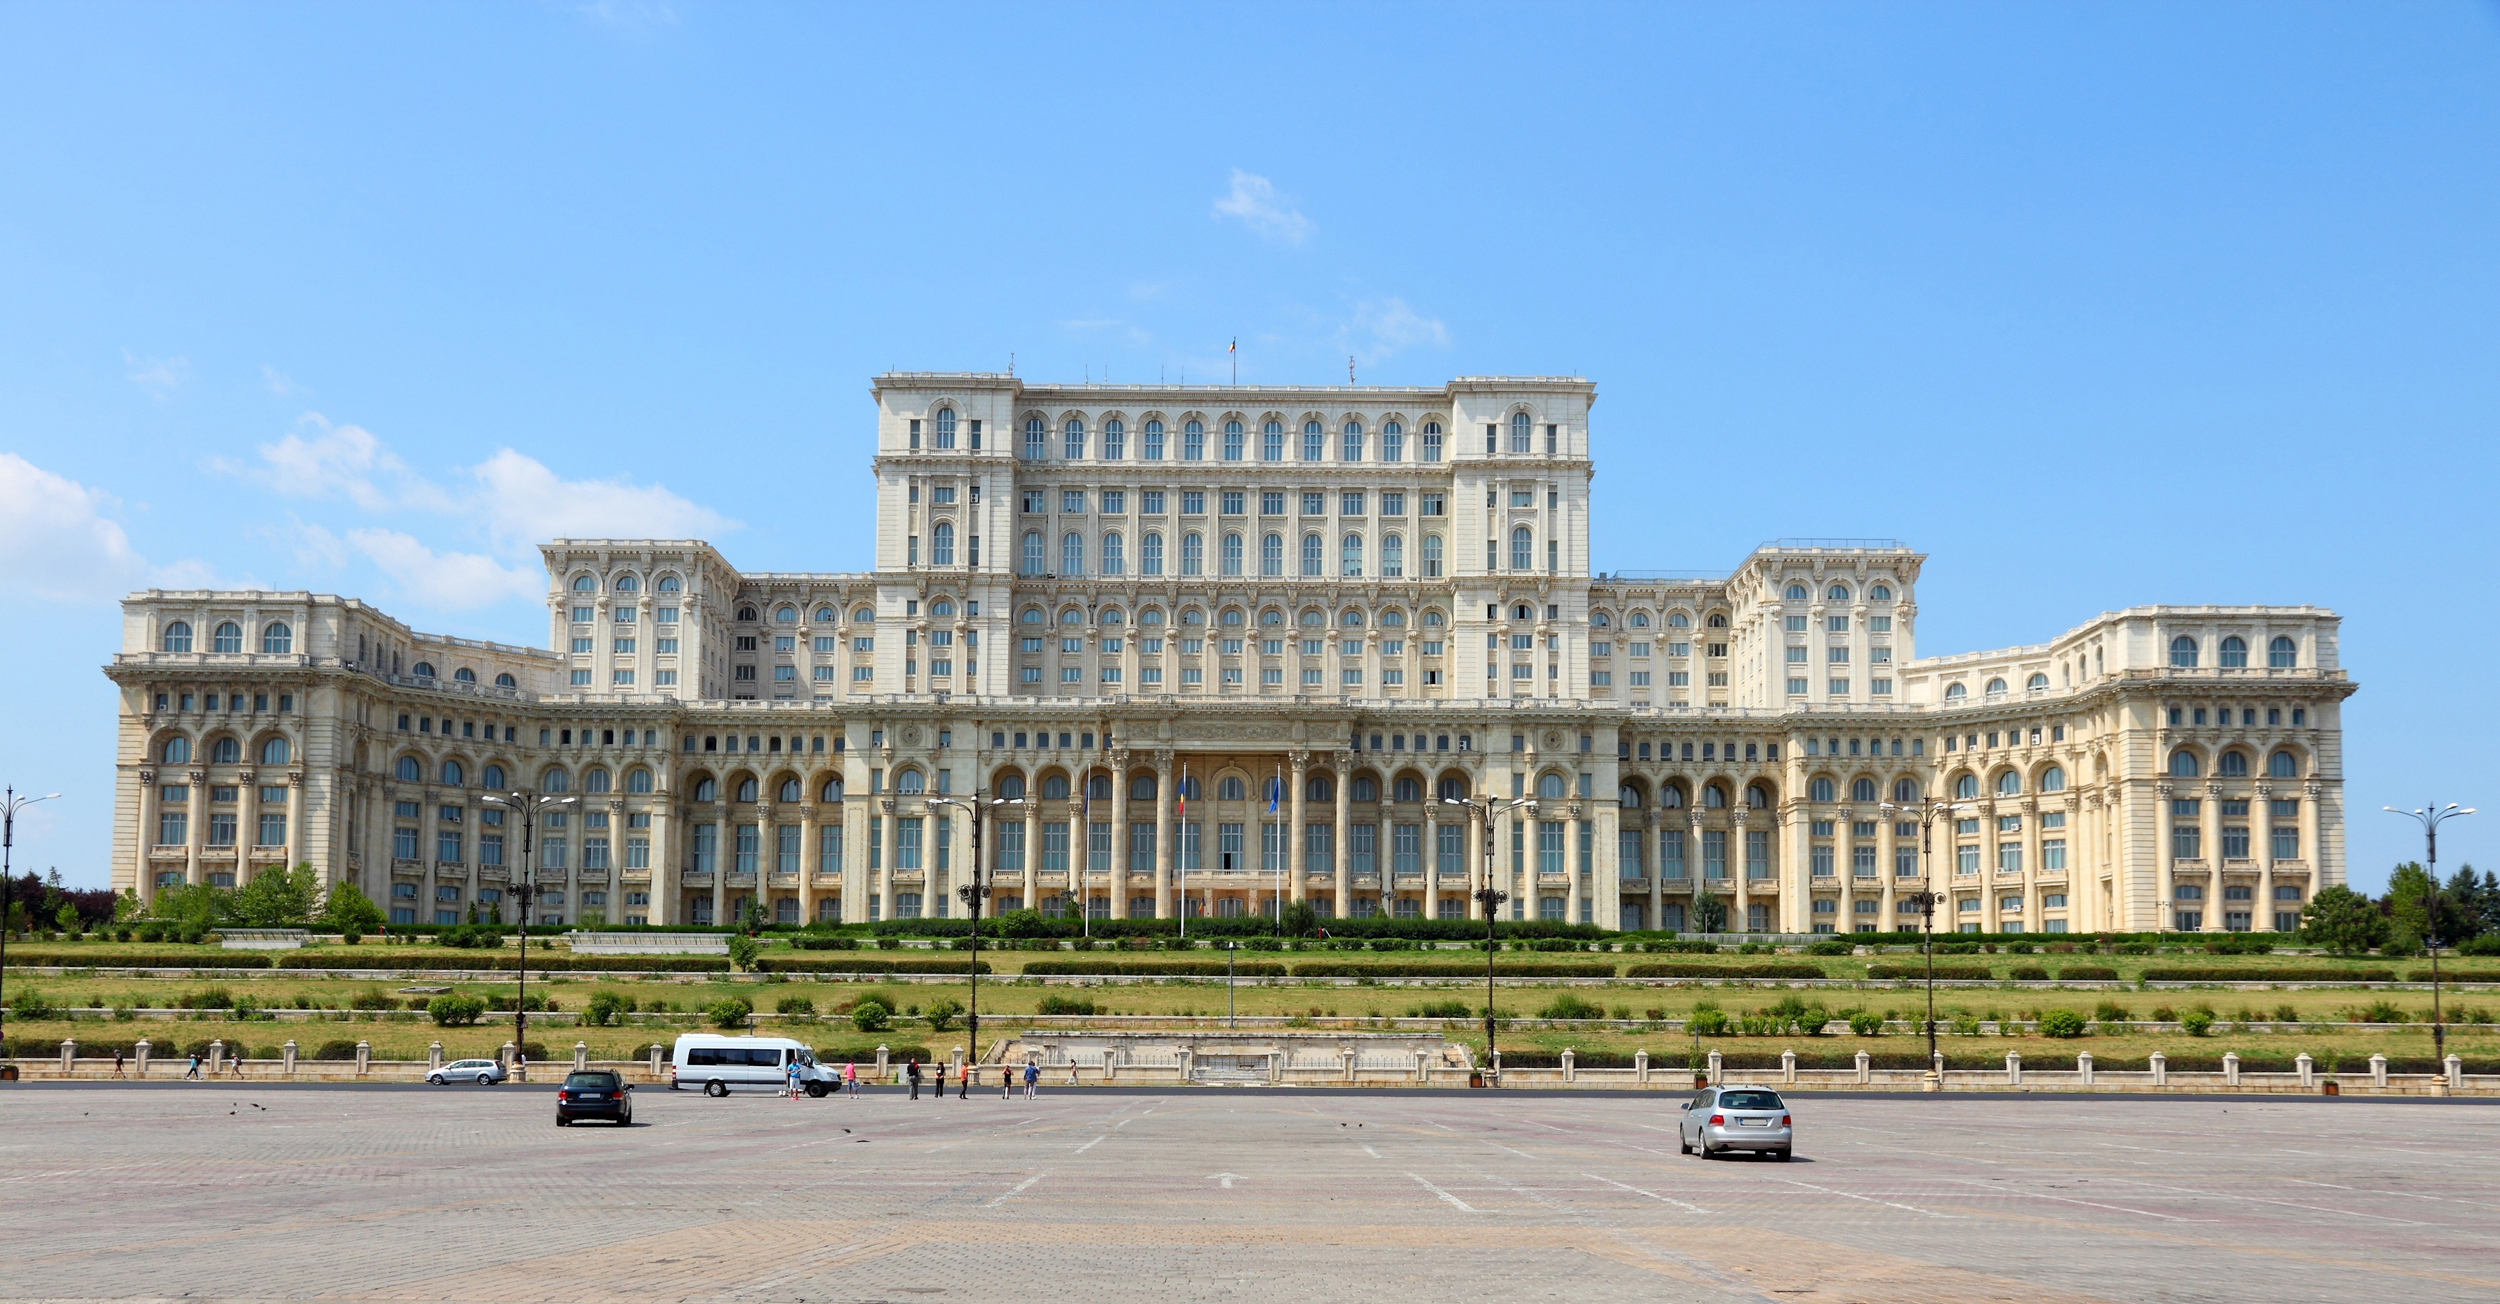 BBC: Palatul Parlamentului, printre cele şapte minuni arhitecturale necunoscute ale lumii